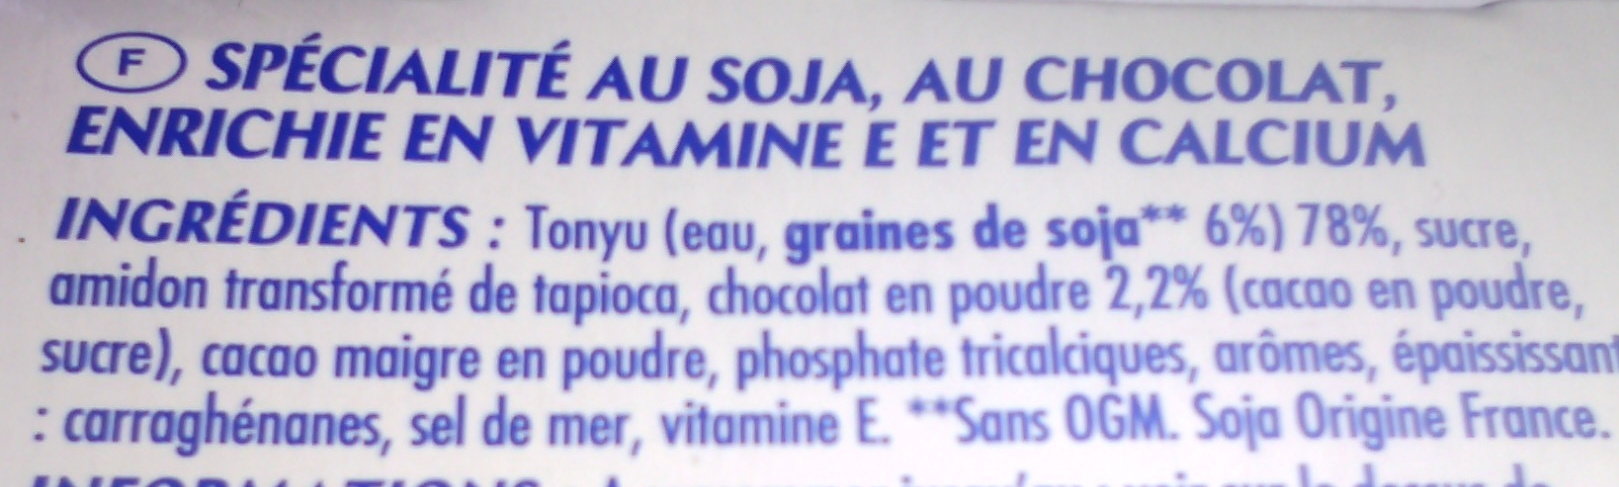 Soja chocolat (4 Pots) - Ingrediënten - fr